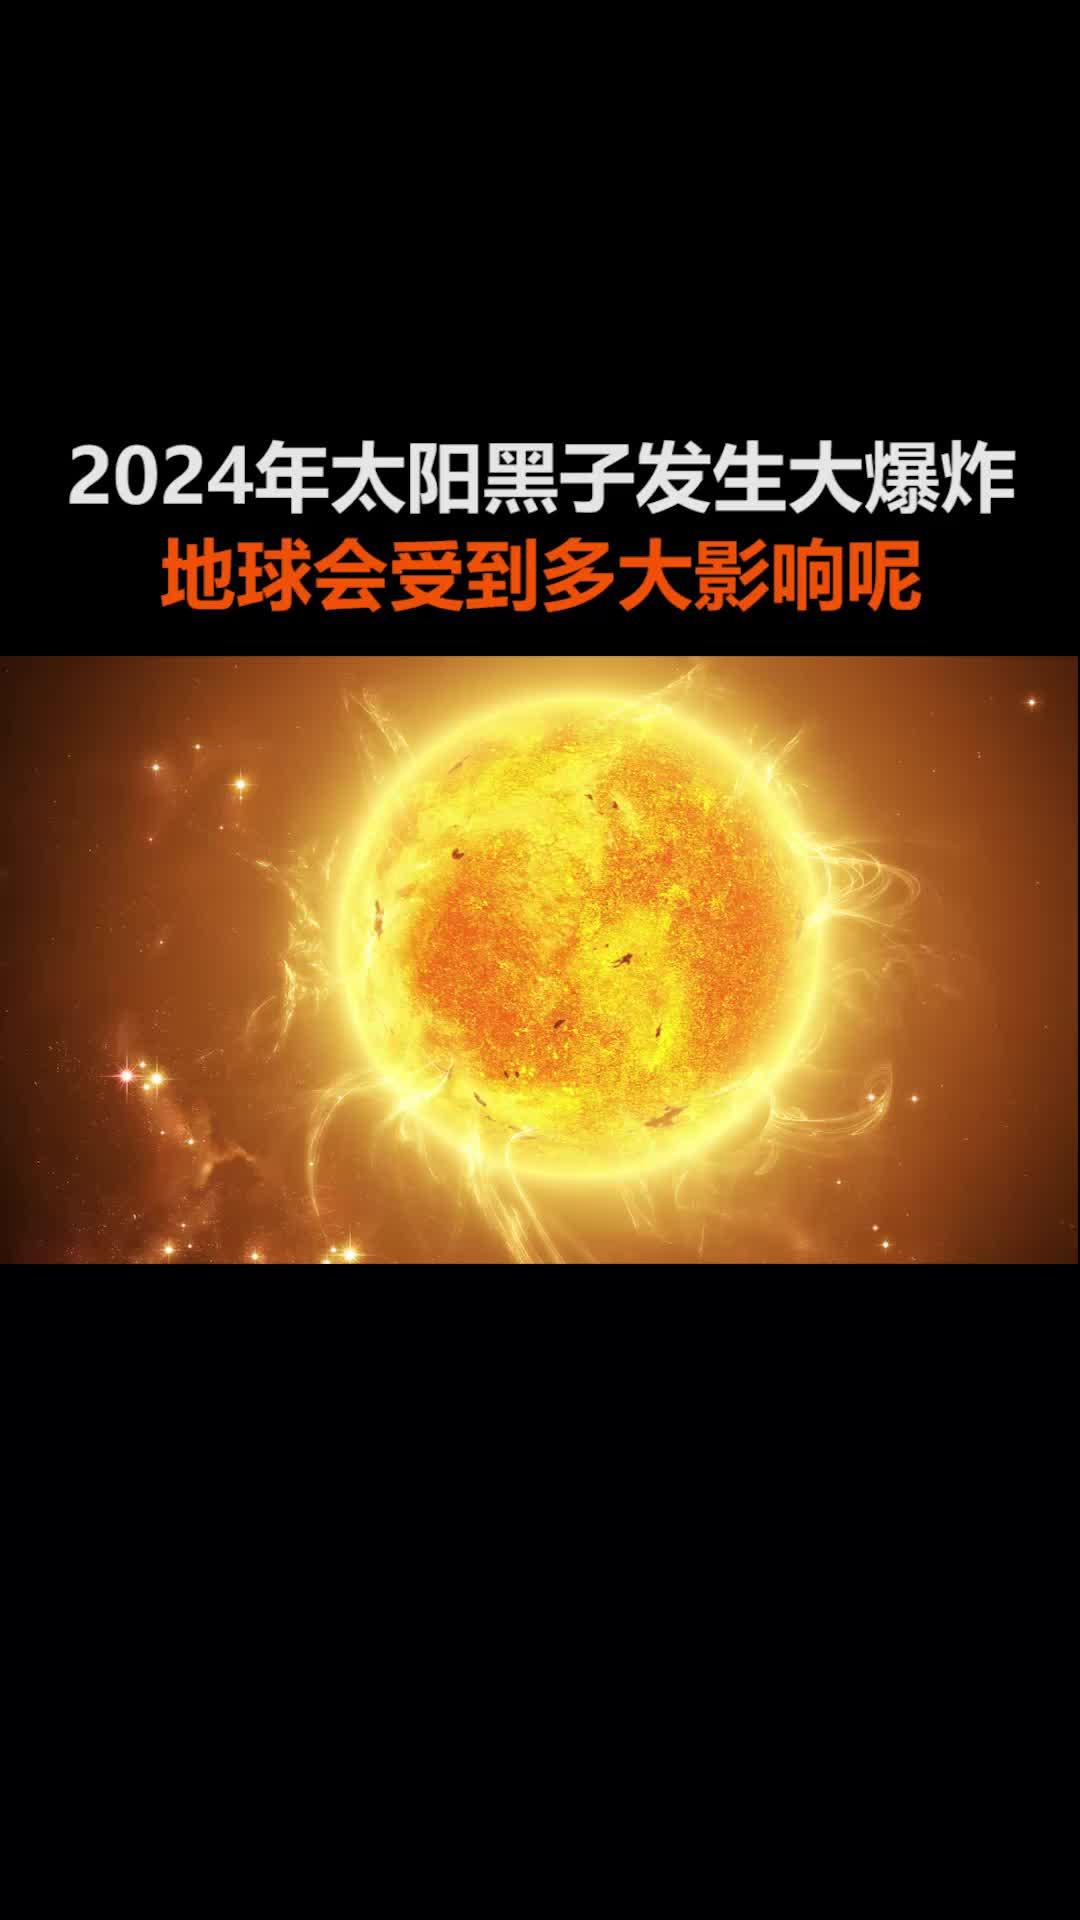 2020年太阳黑子活动图片